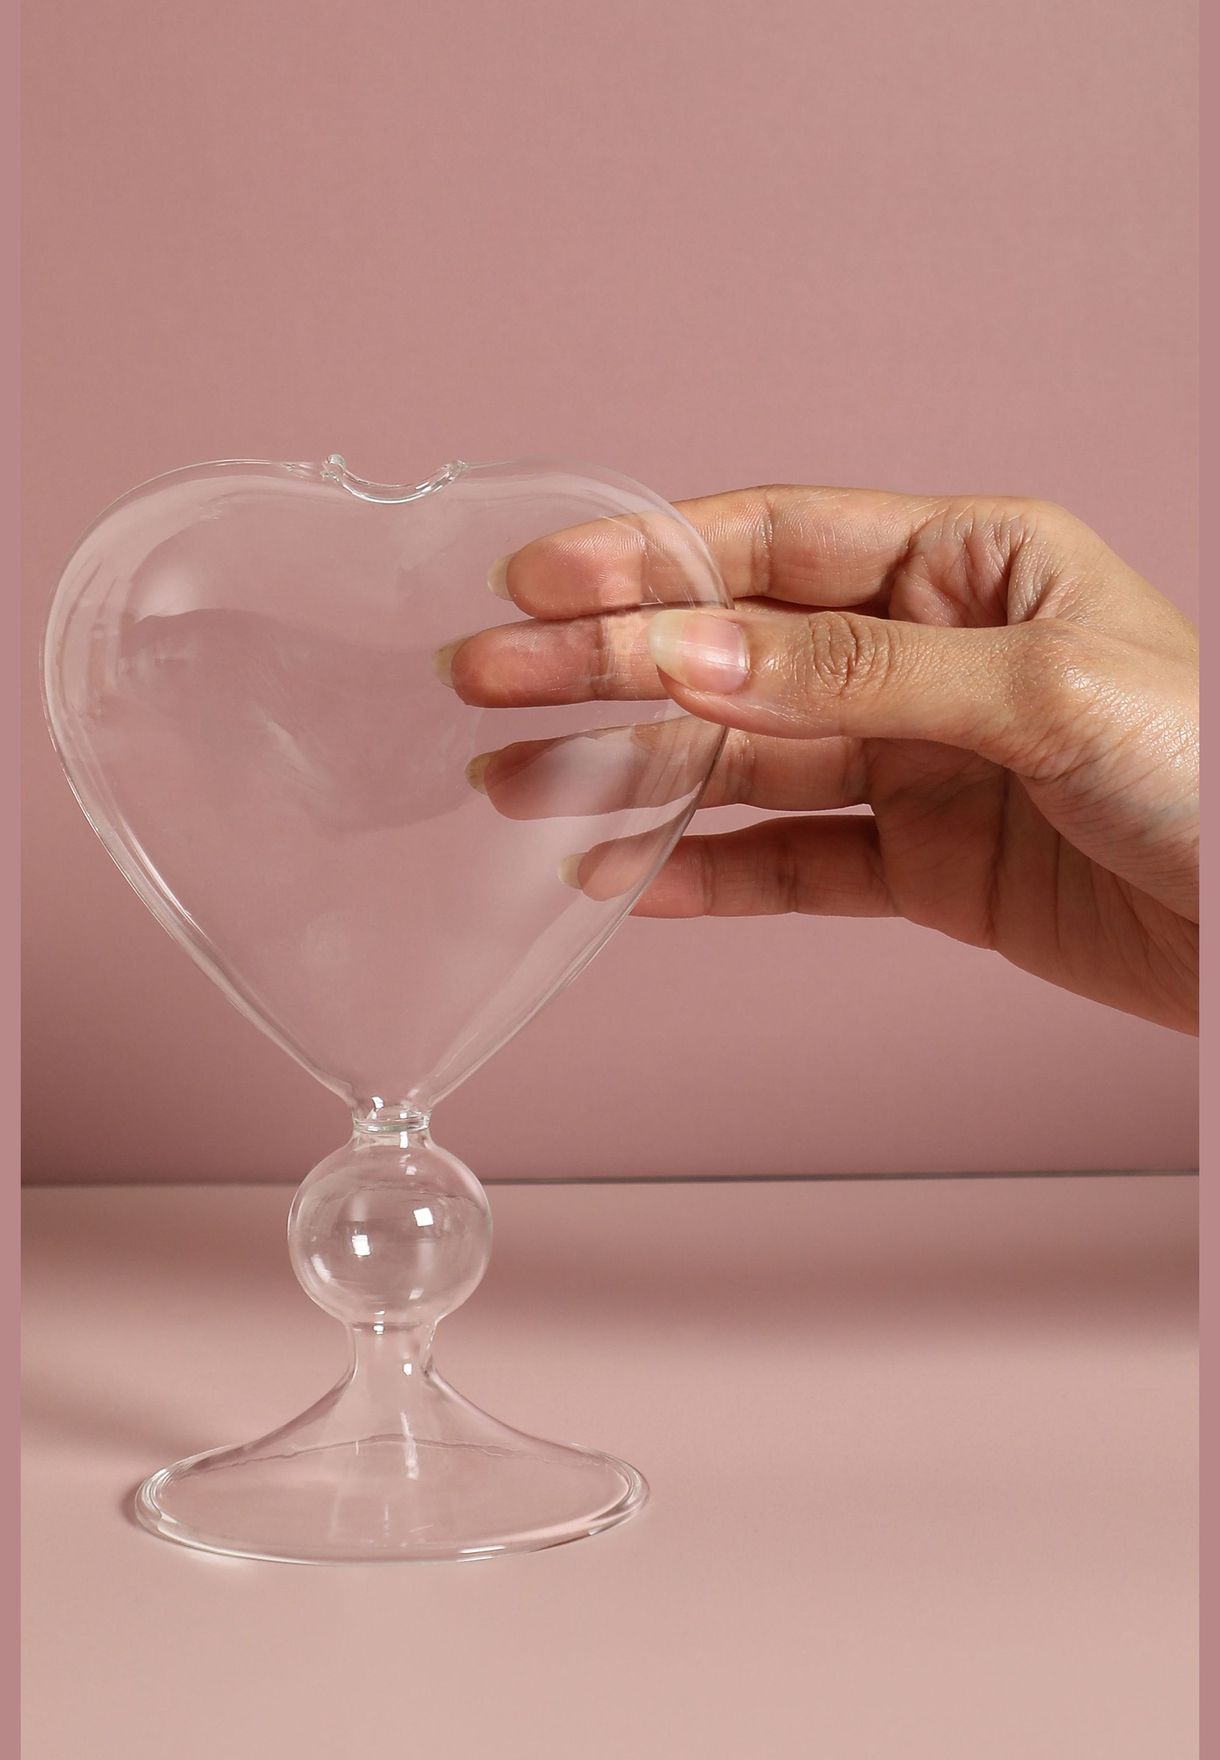 Heart Shaped Modern Glass Flower Vase For Home Decor 